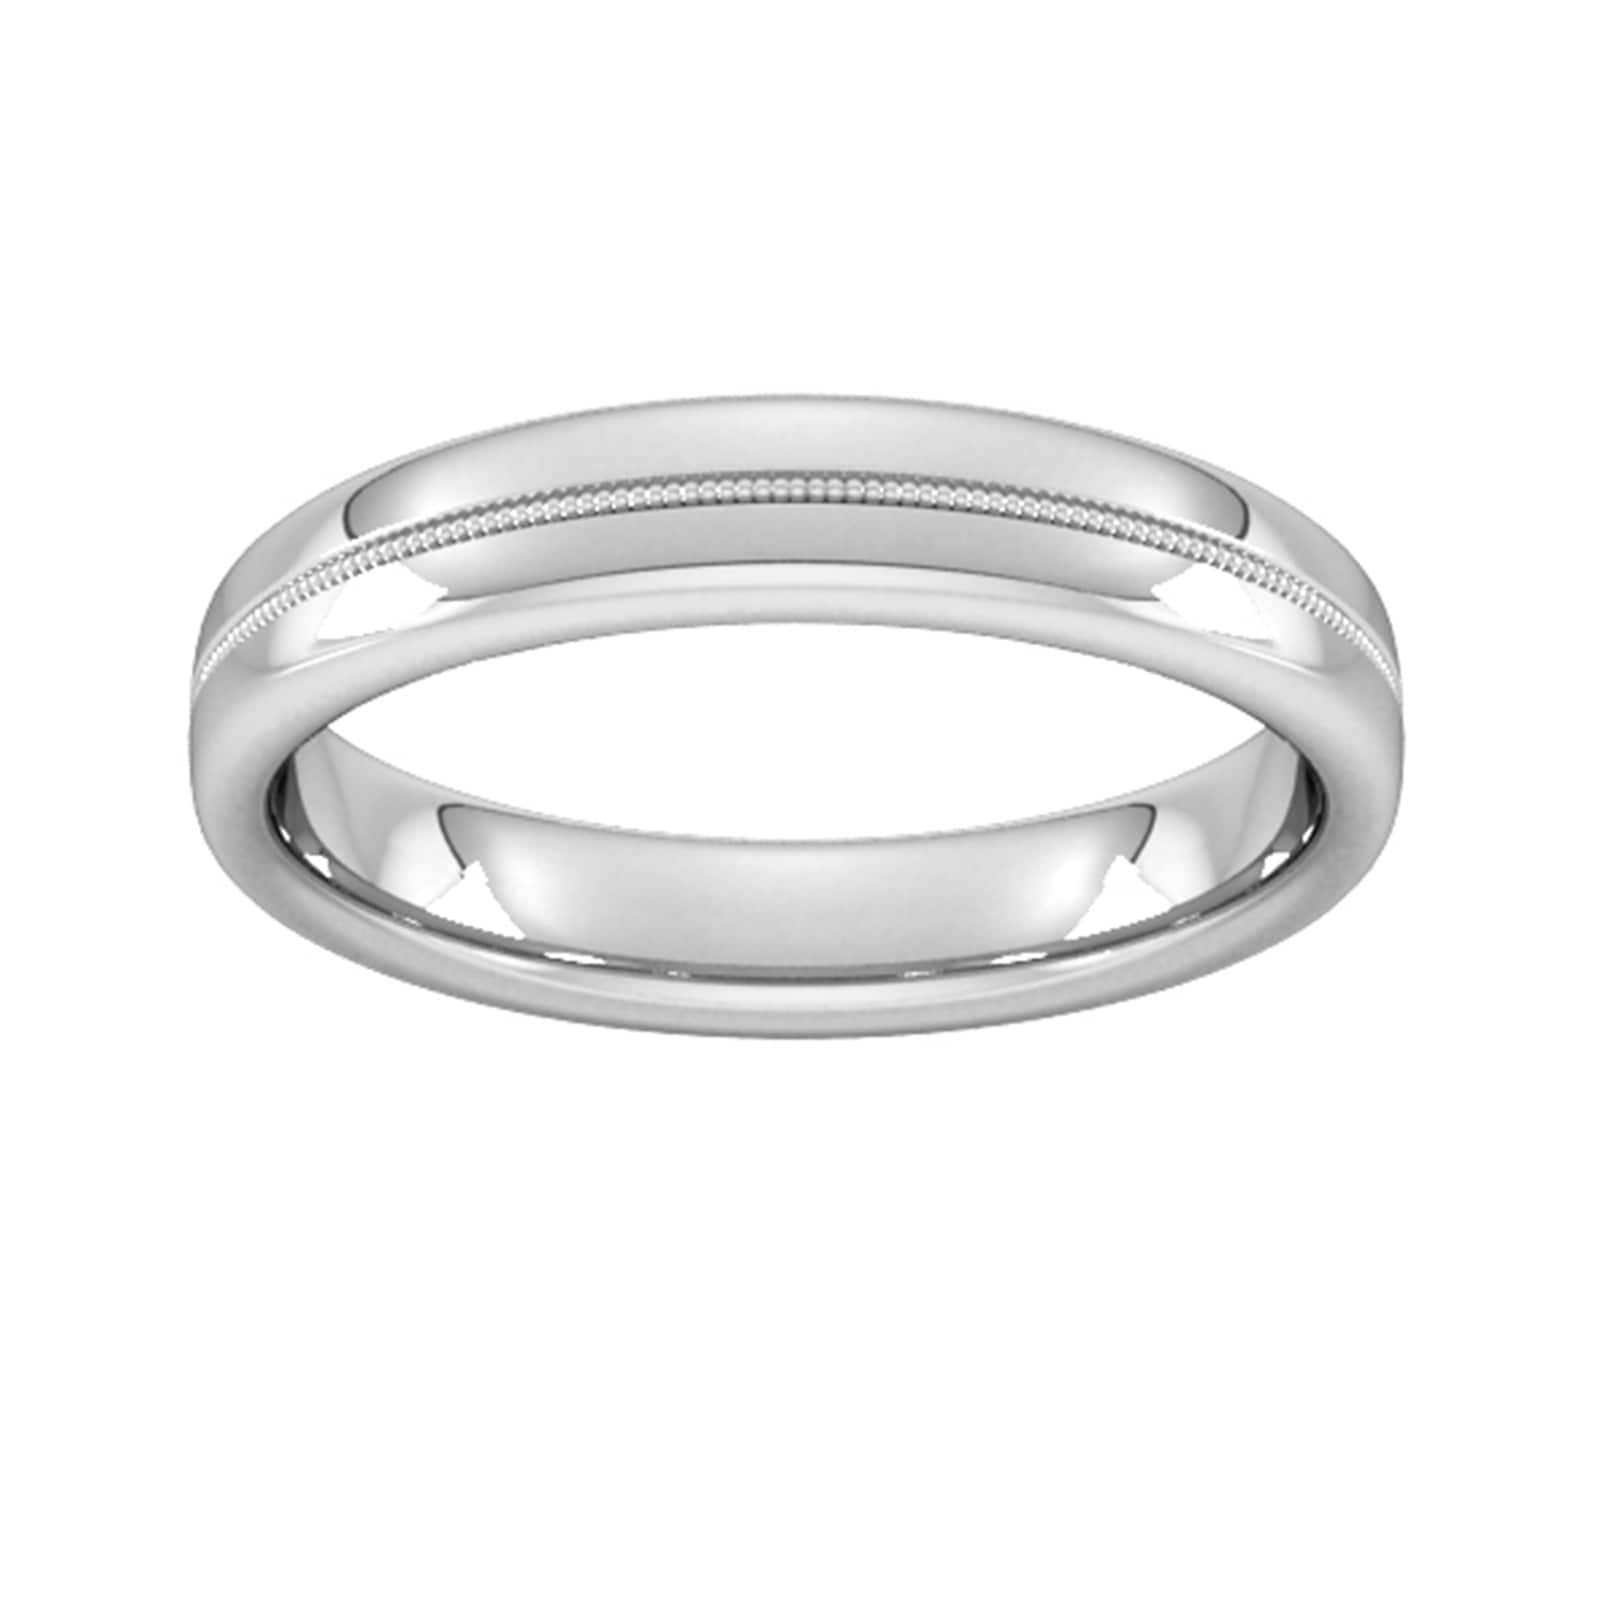 4mm Slight Court Standard Milgrain Centre Wedding Ring In 18 Carat White Gold - Ring Size O